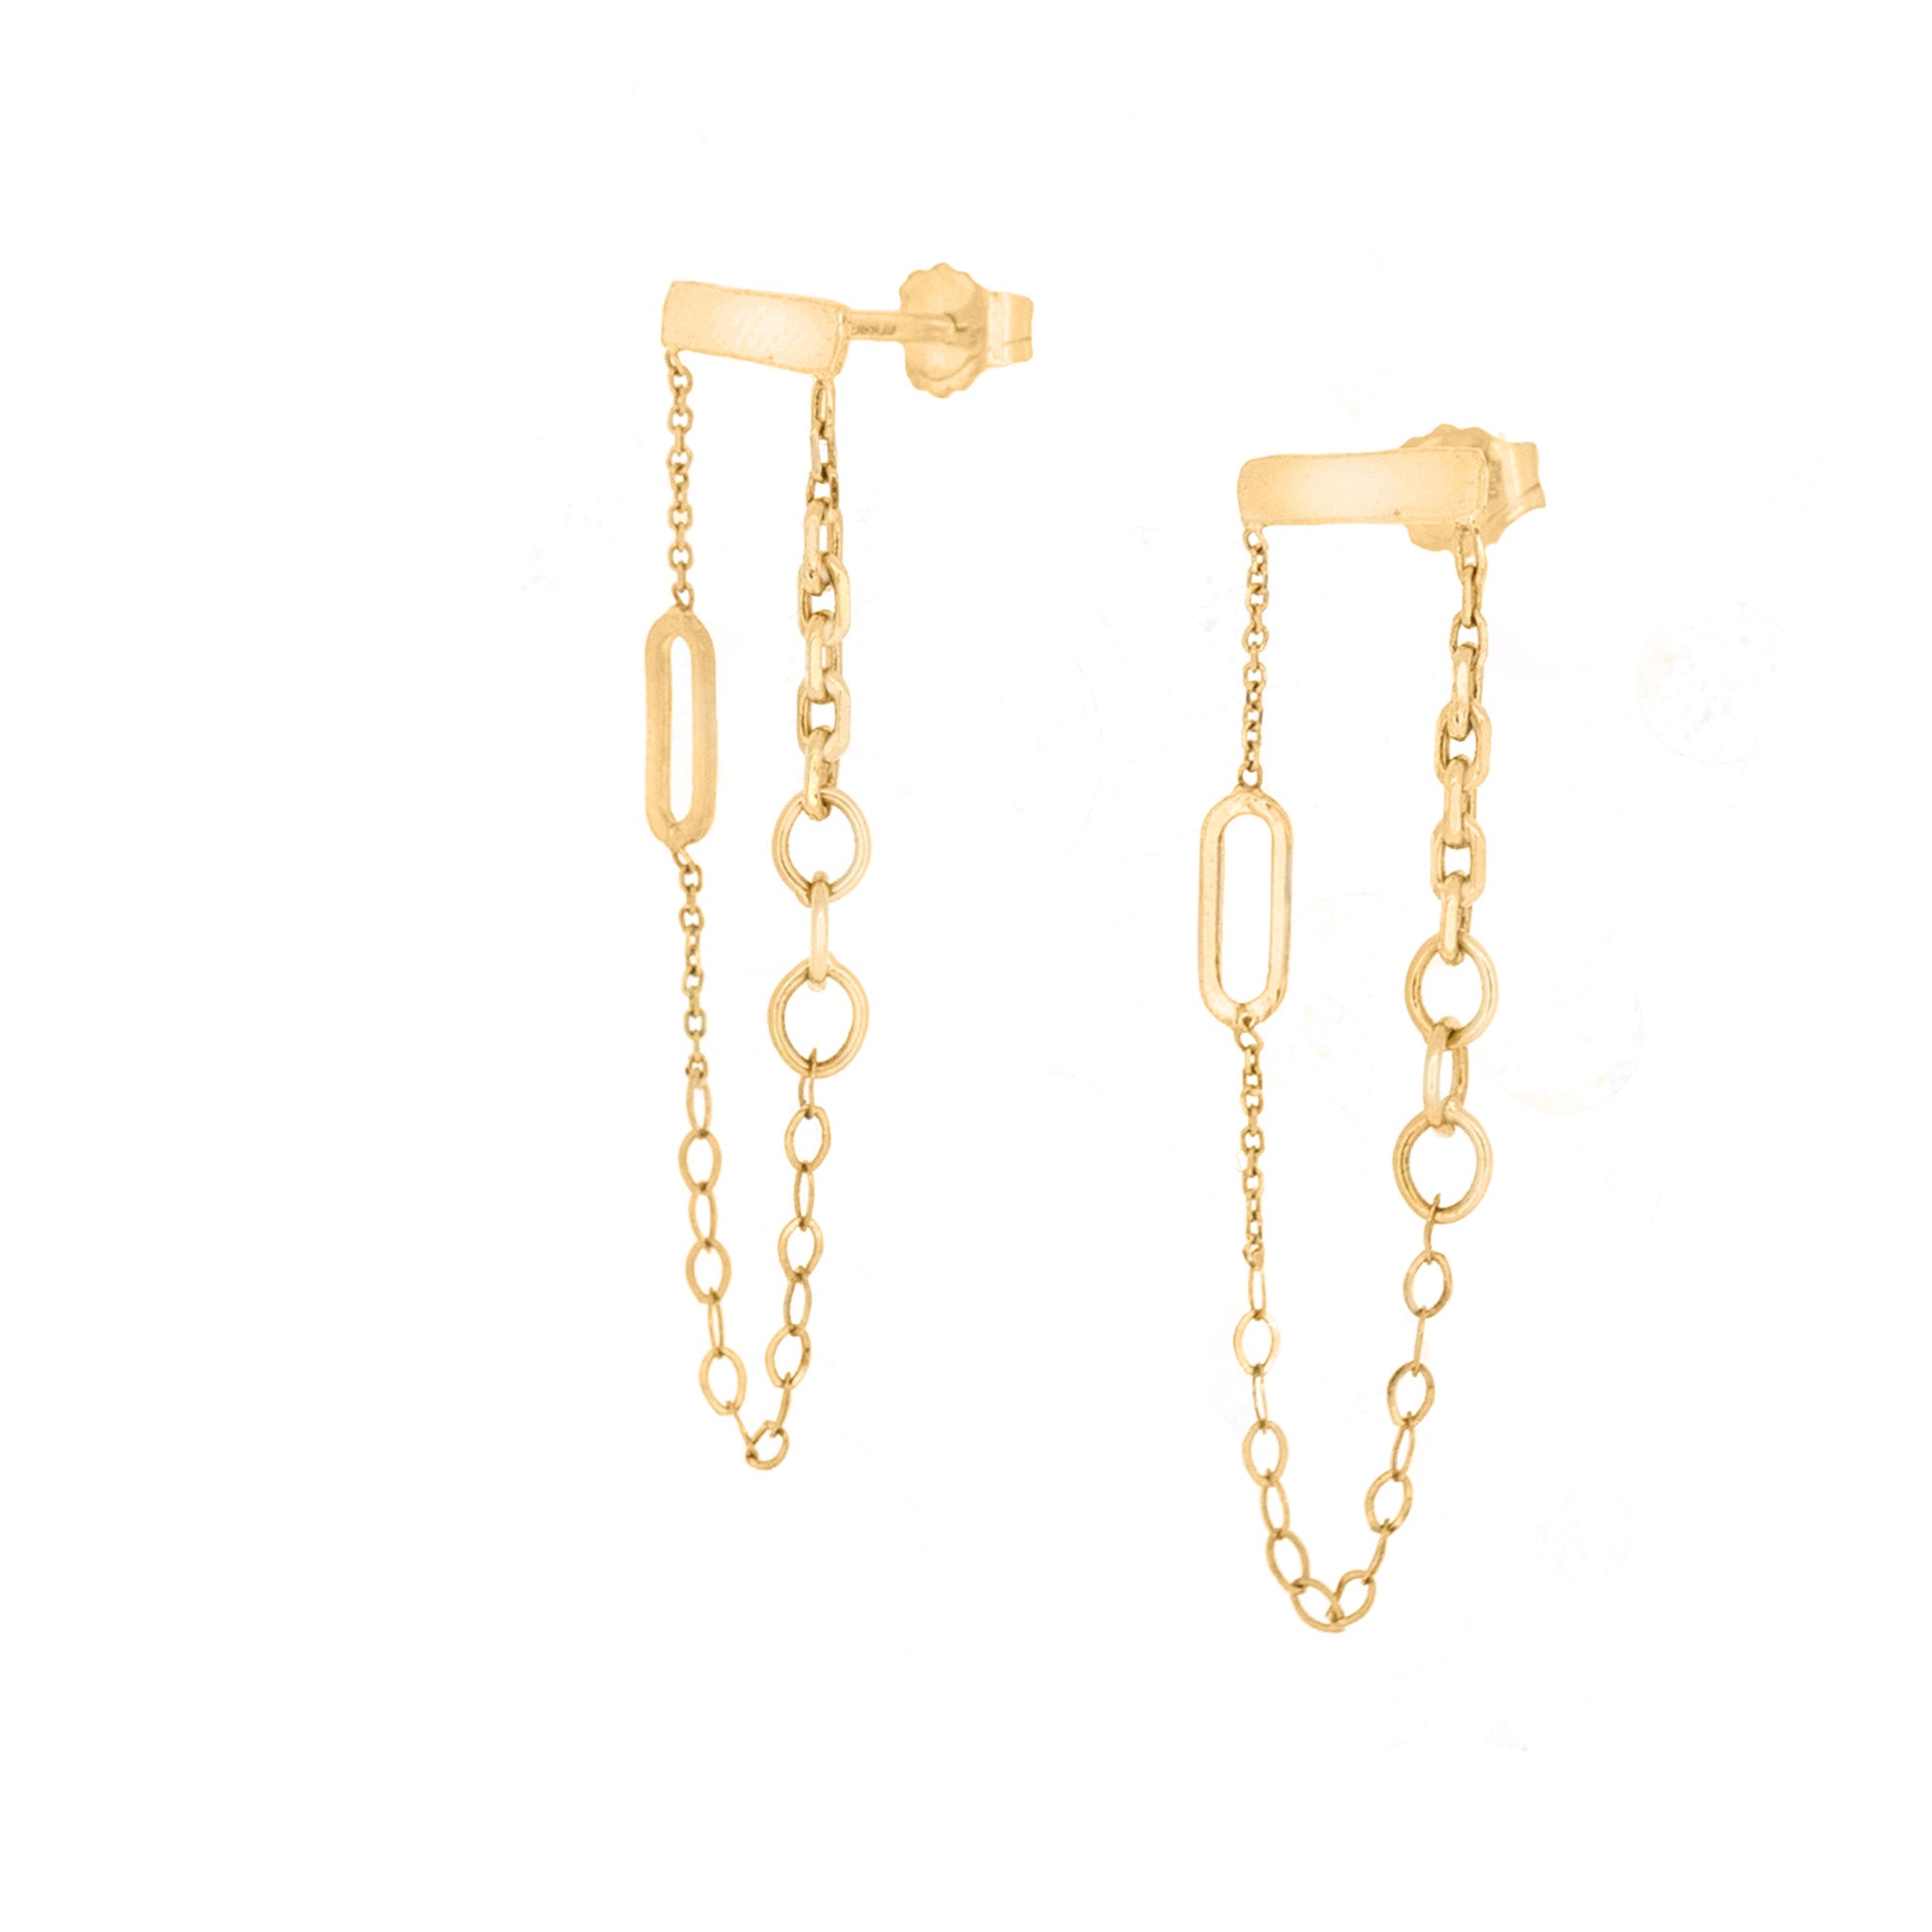 18ct Gold Crescent Hoop Earrings Titanium Post Gold Earrings Medium Size Gold  Earrings Non Tarnish Waterproof Celestial Earrings - Etsy